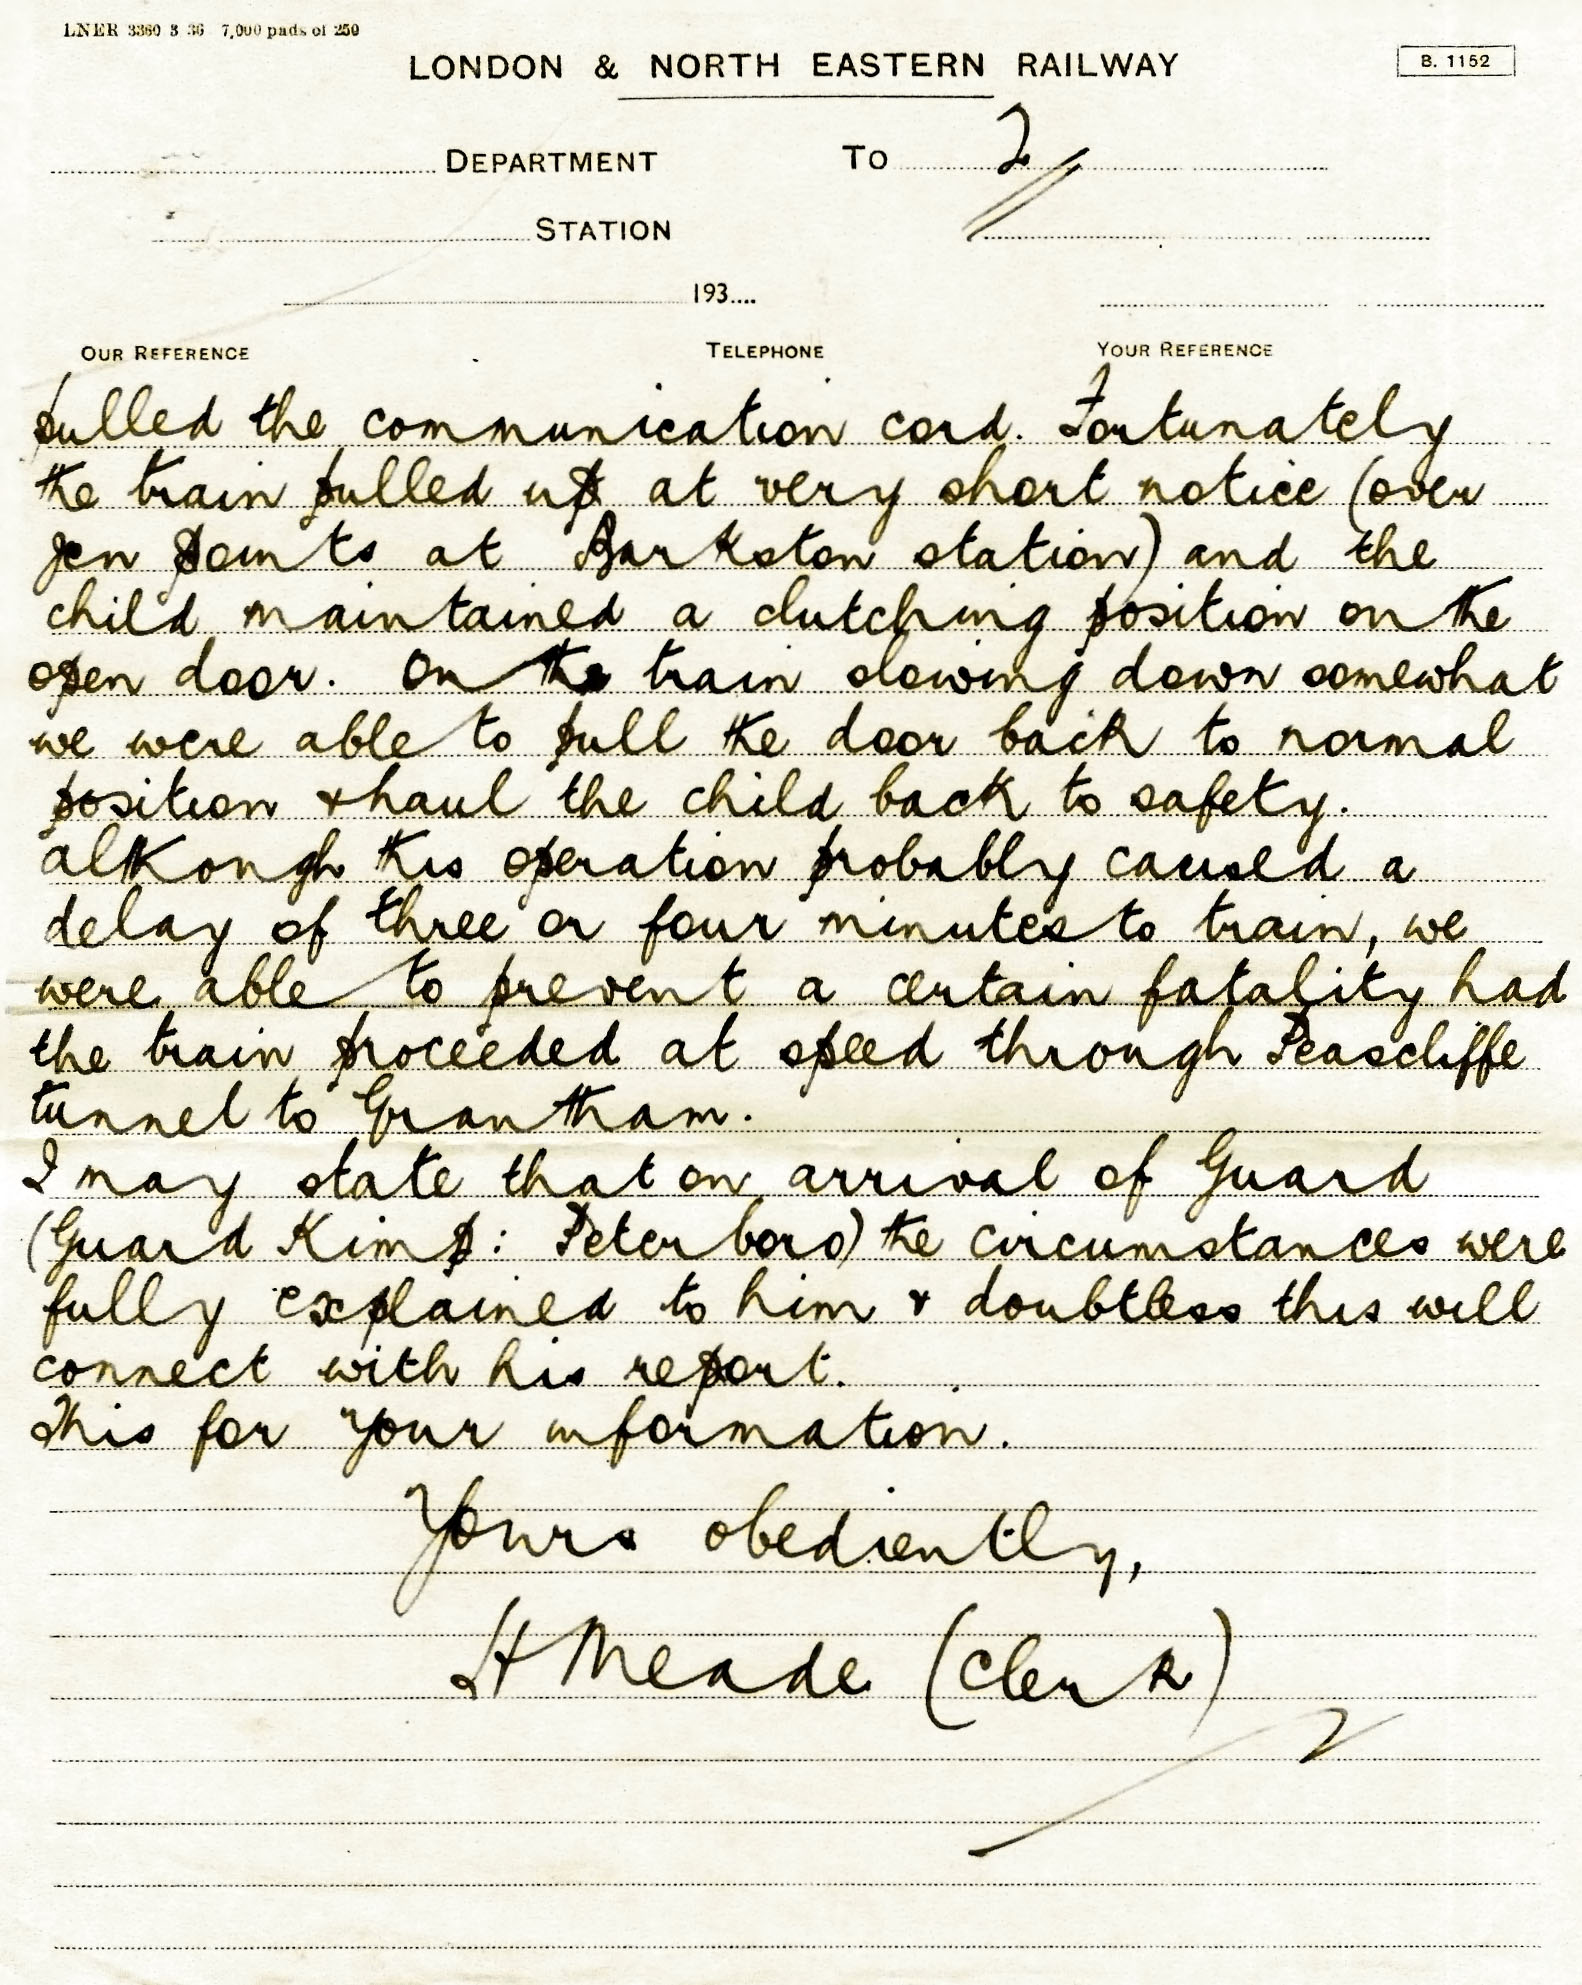 letter-written-by-herbert-meade-1938-06-27-page-2-adj